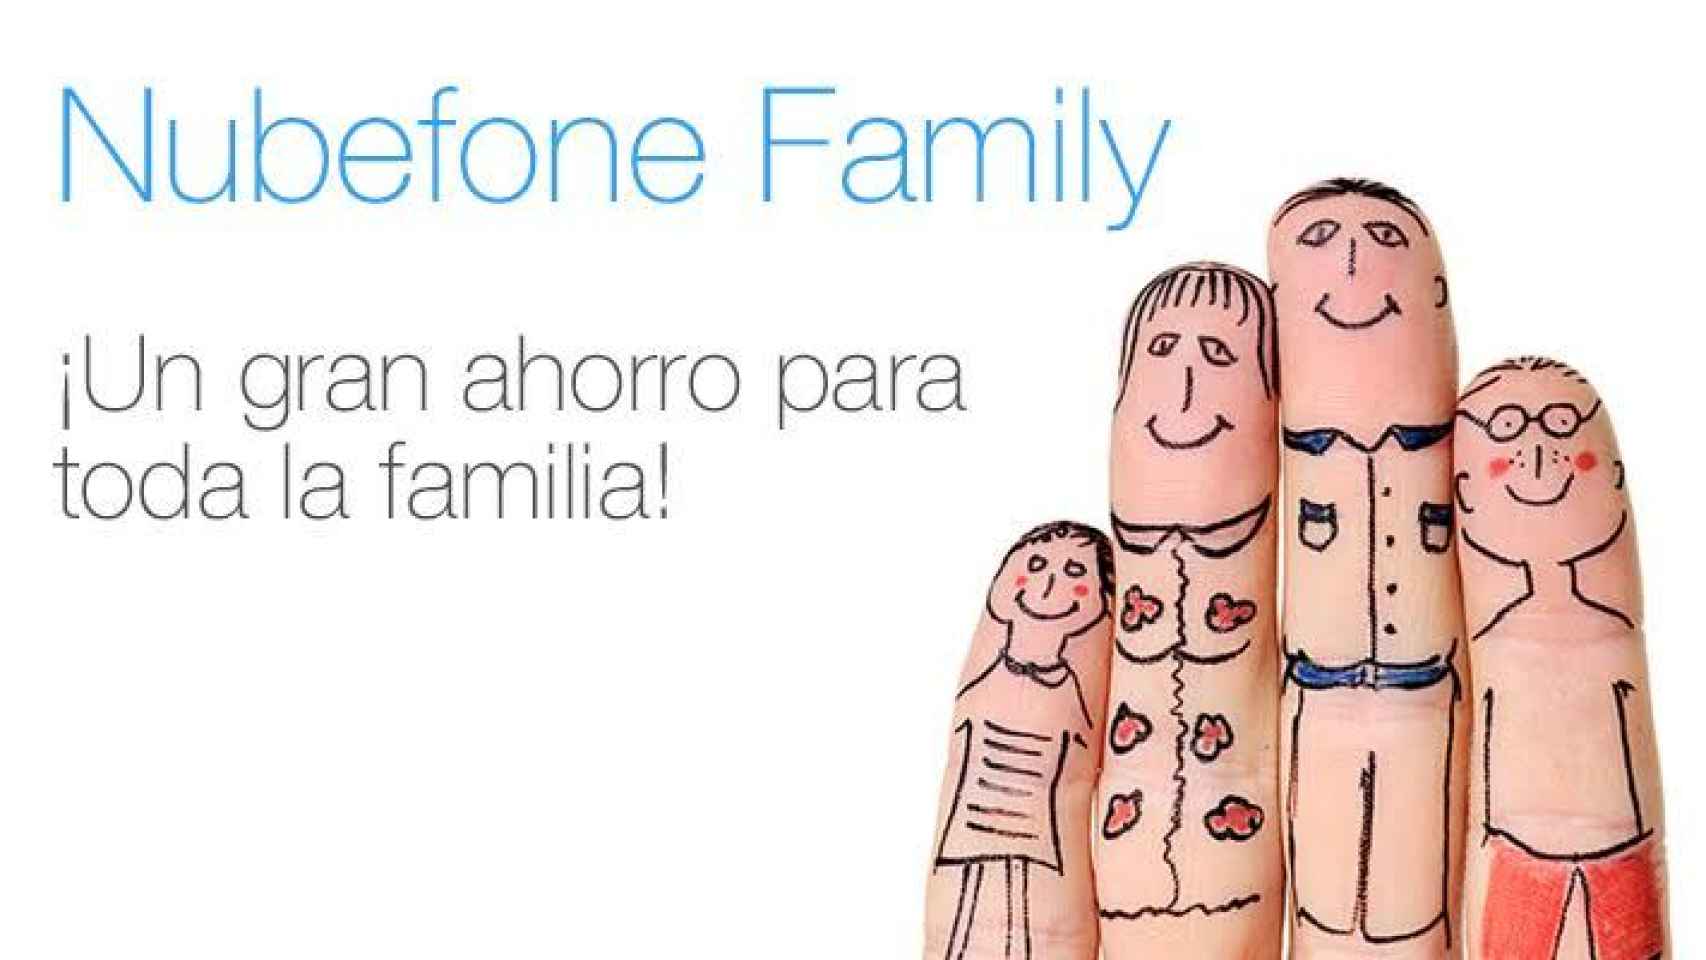 Nubefone Family, un plan de ahorro en llamadas para toda la familia